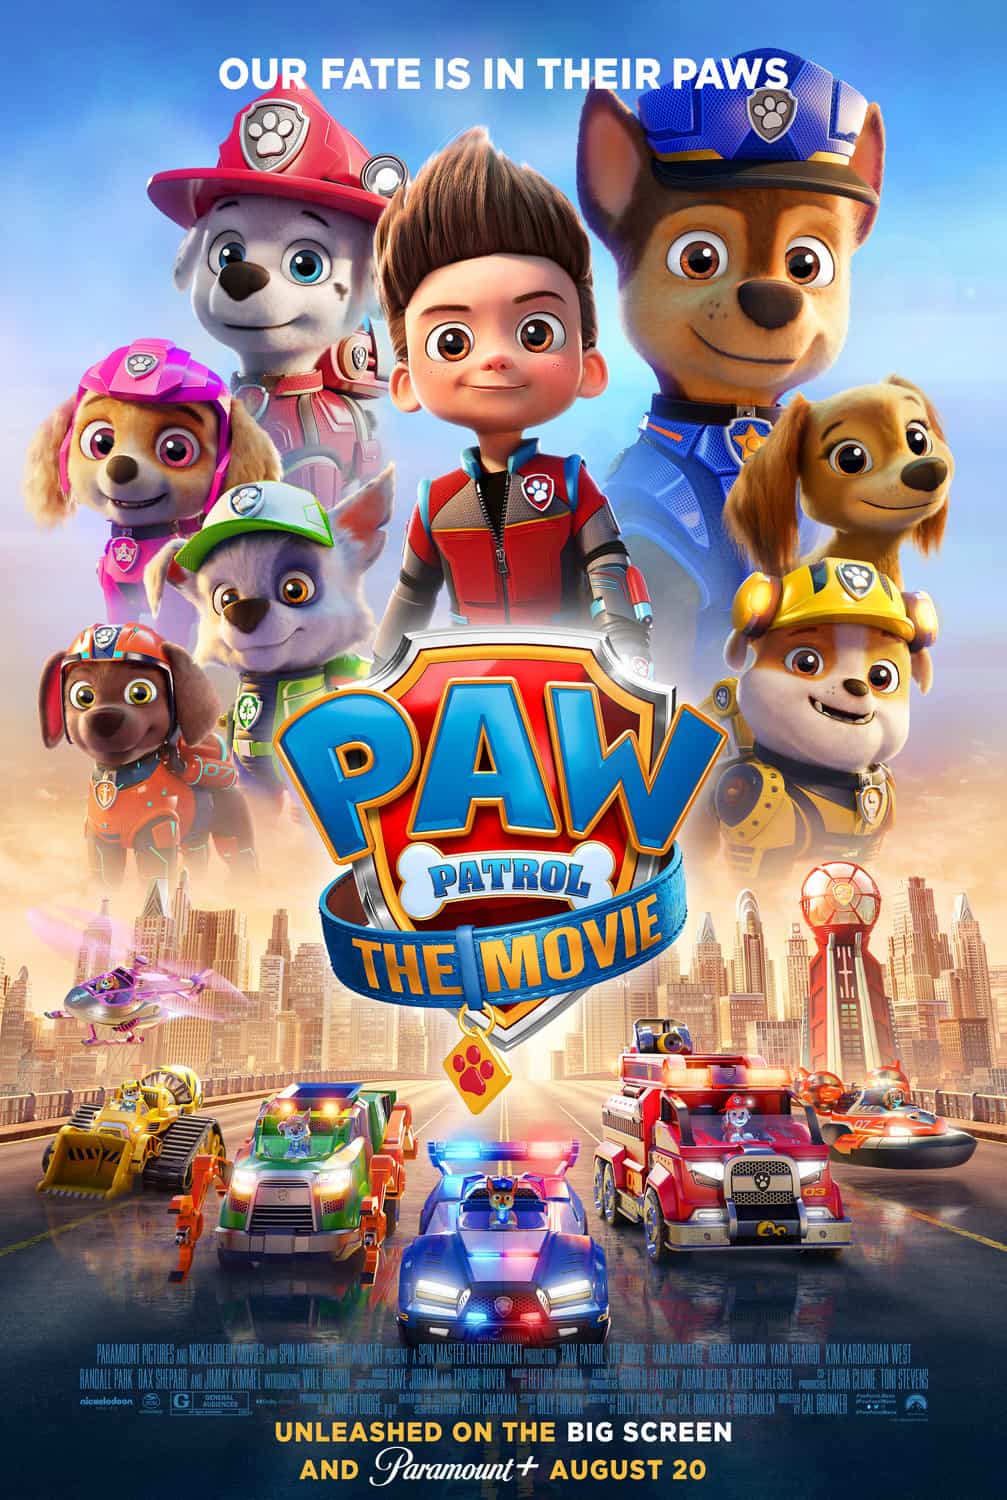 The Paw Patrol Movie